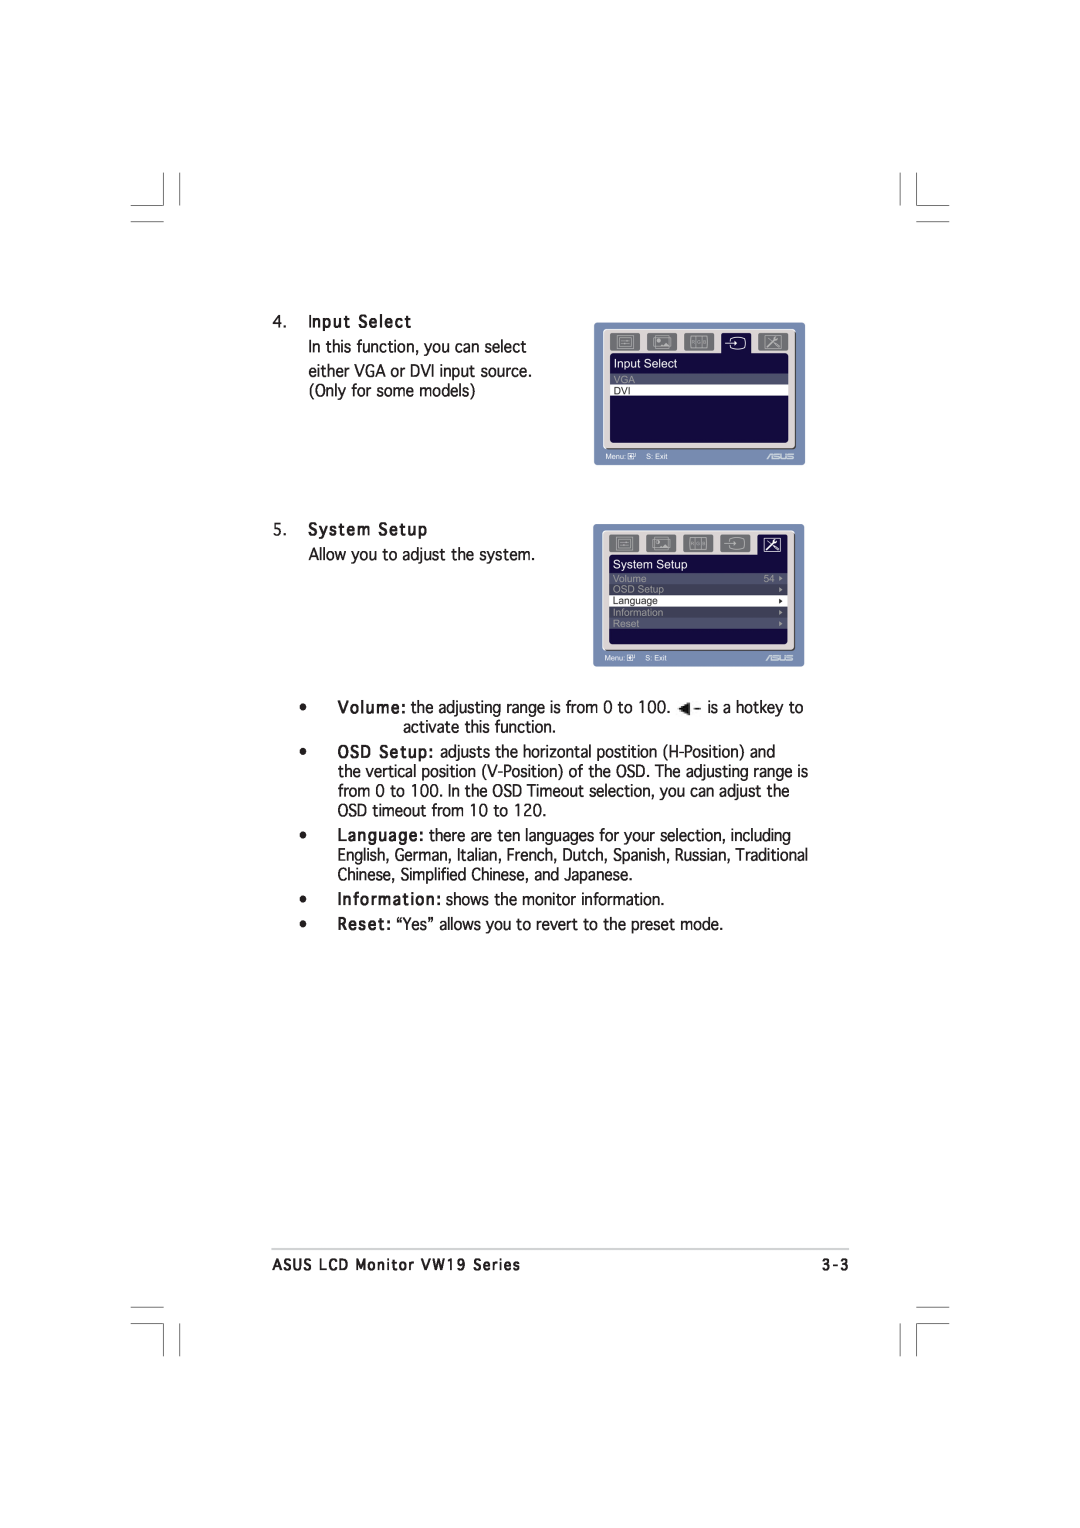 Asus VW191D manual Input Select, System Setup 